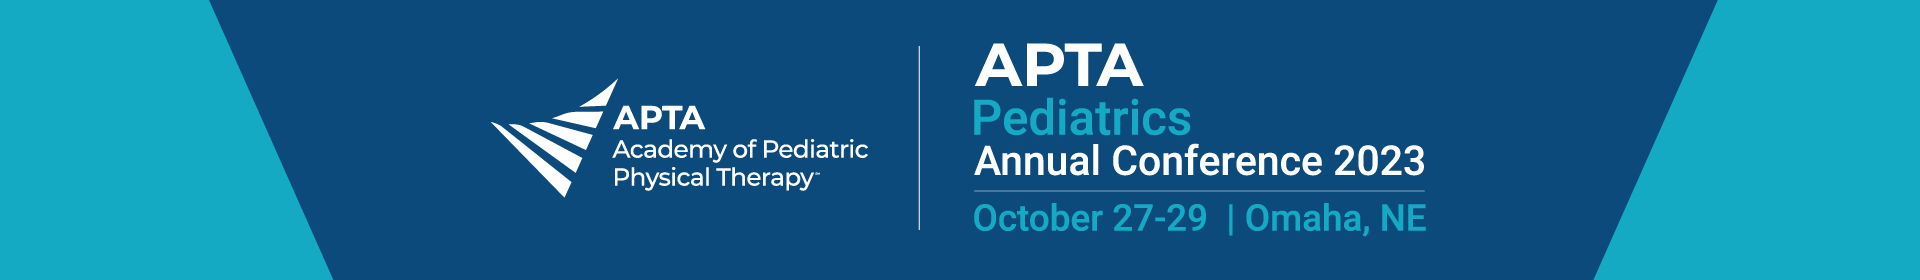 2023 APTA Pediatrics Annual Conference Event Banner